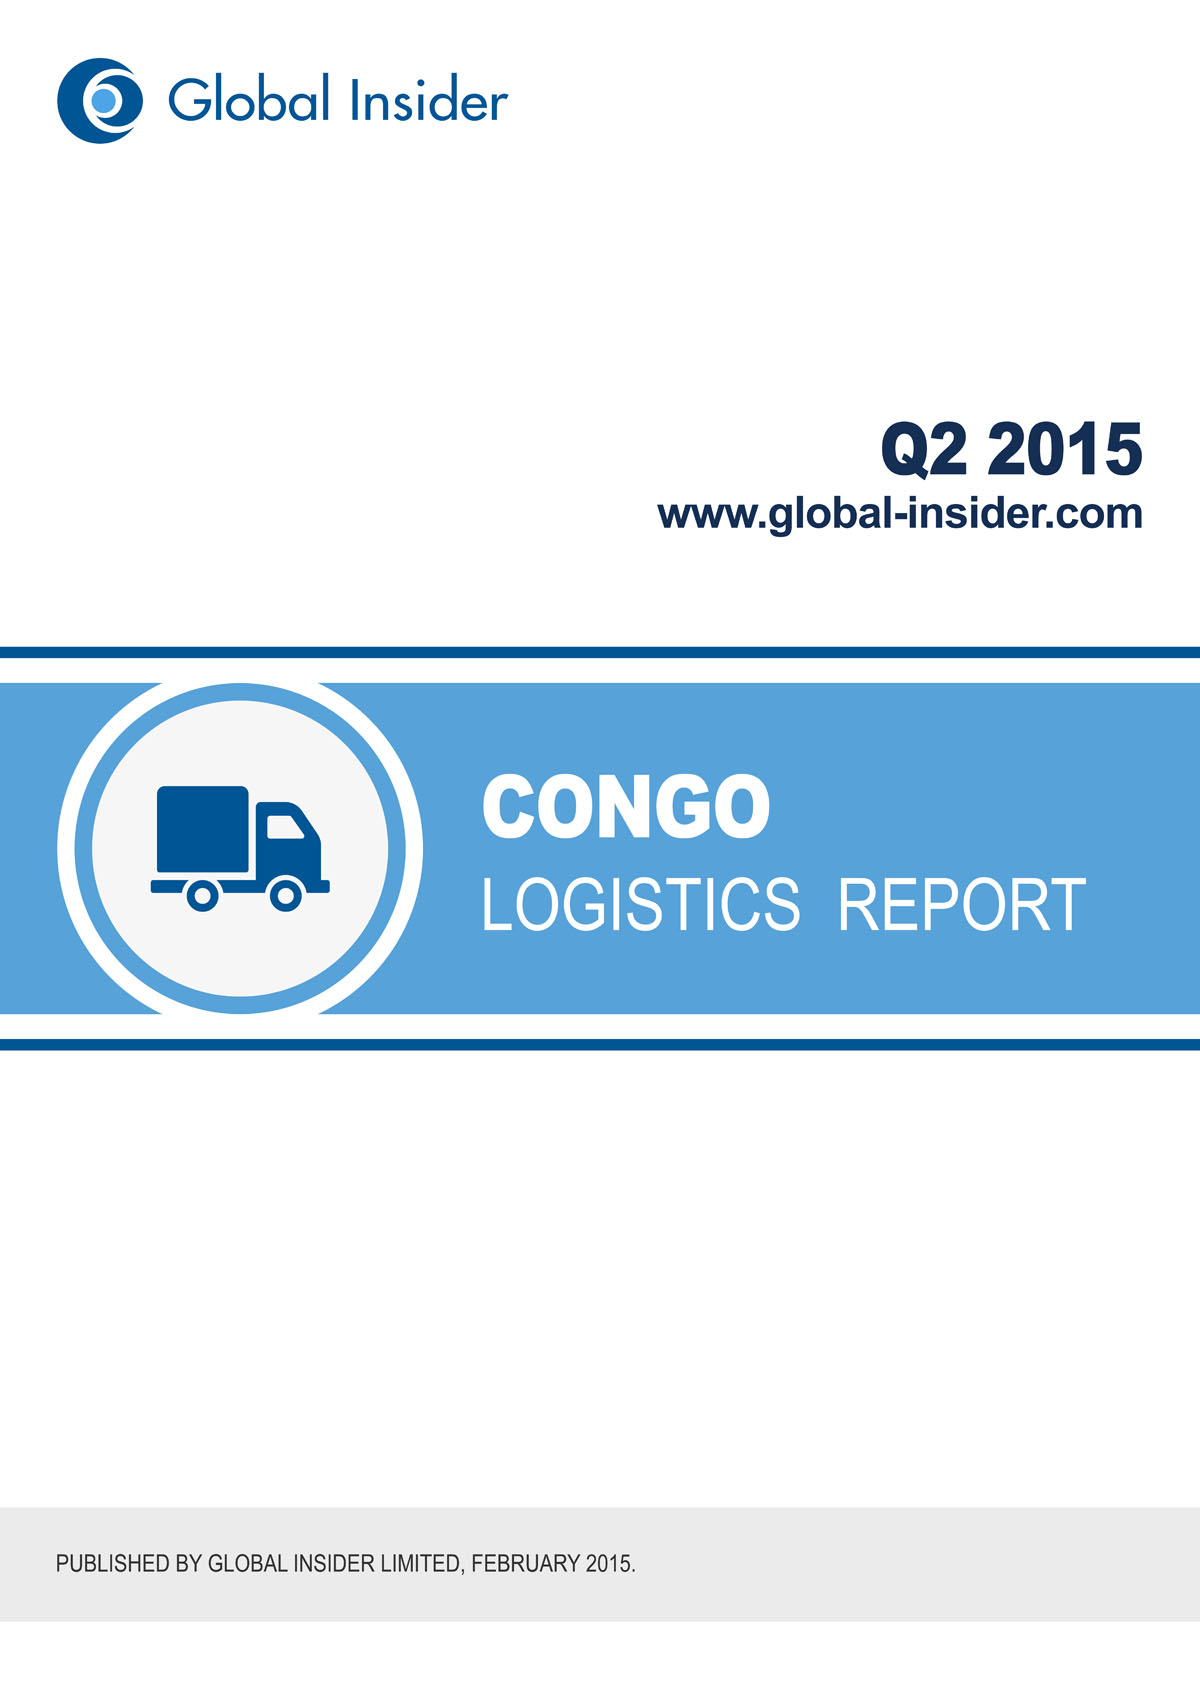 Democratic Republic of Congo Logistics Report